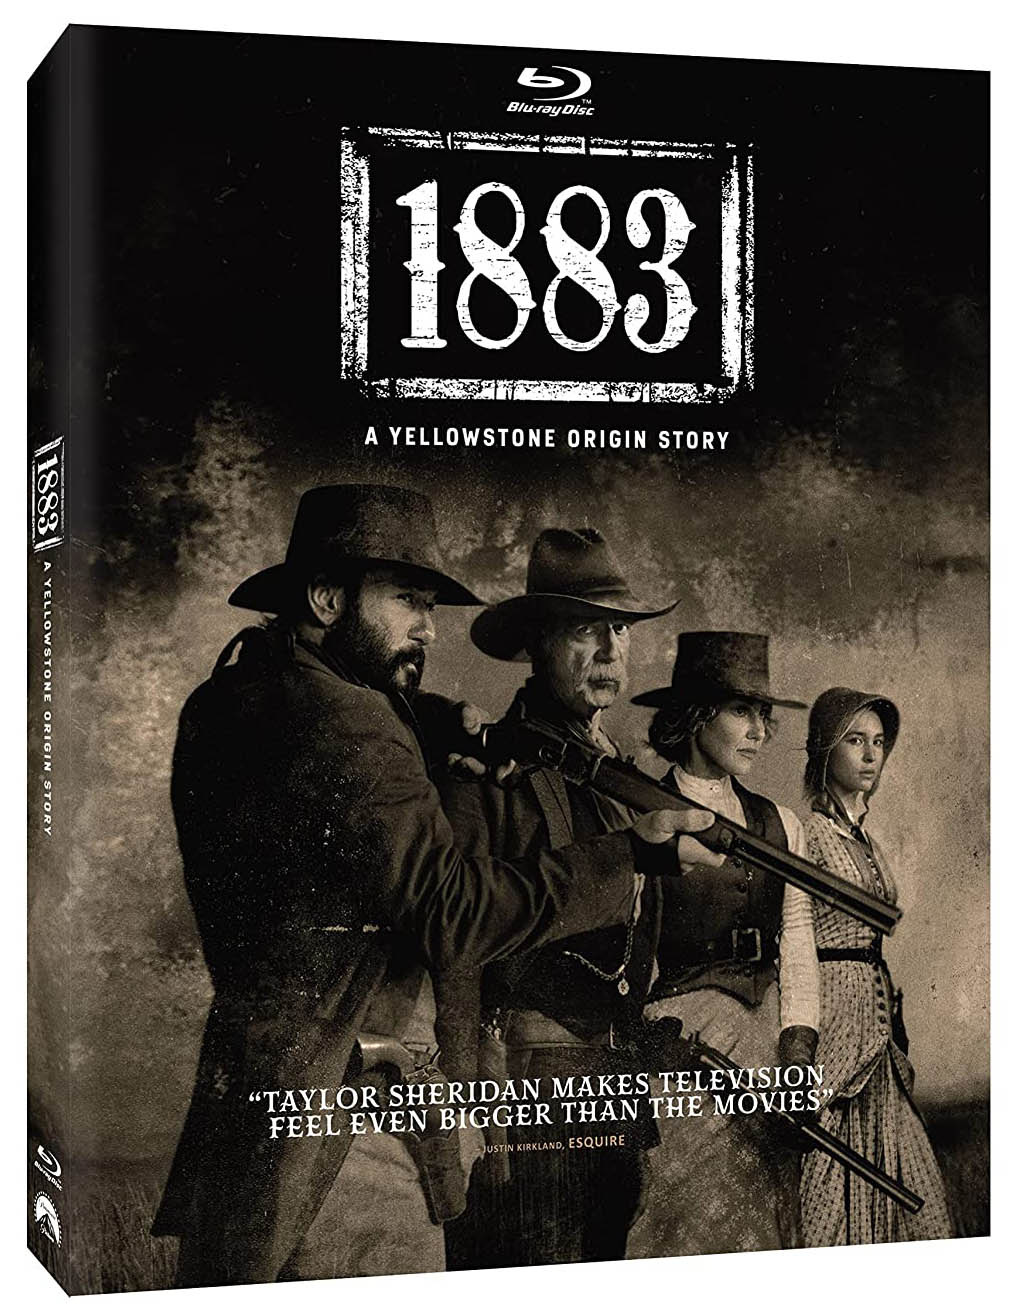 1883 A Yellowstone Origin Story Blu-ray